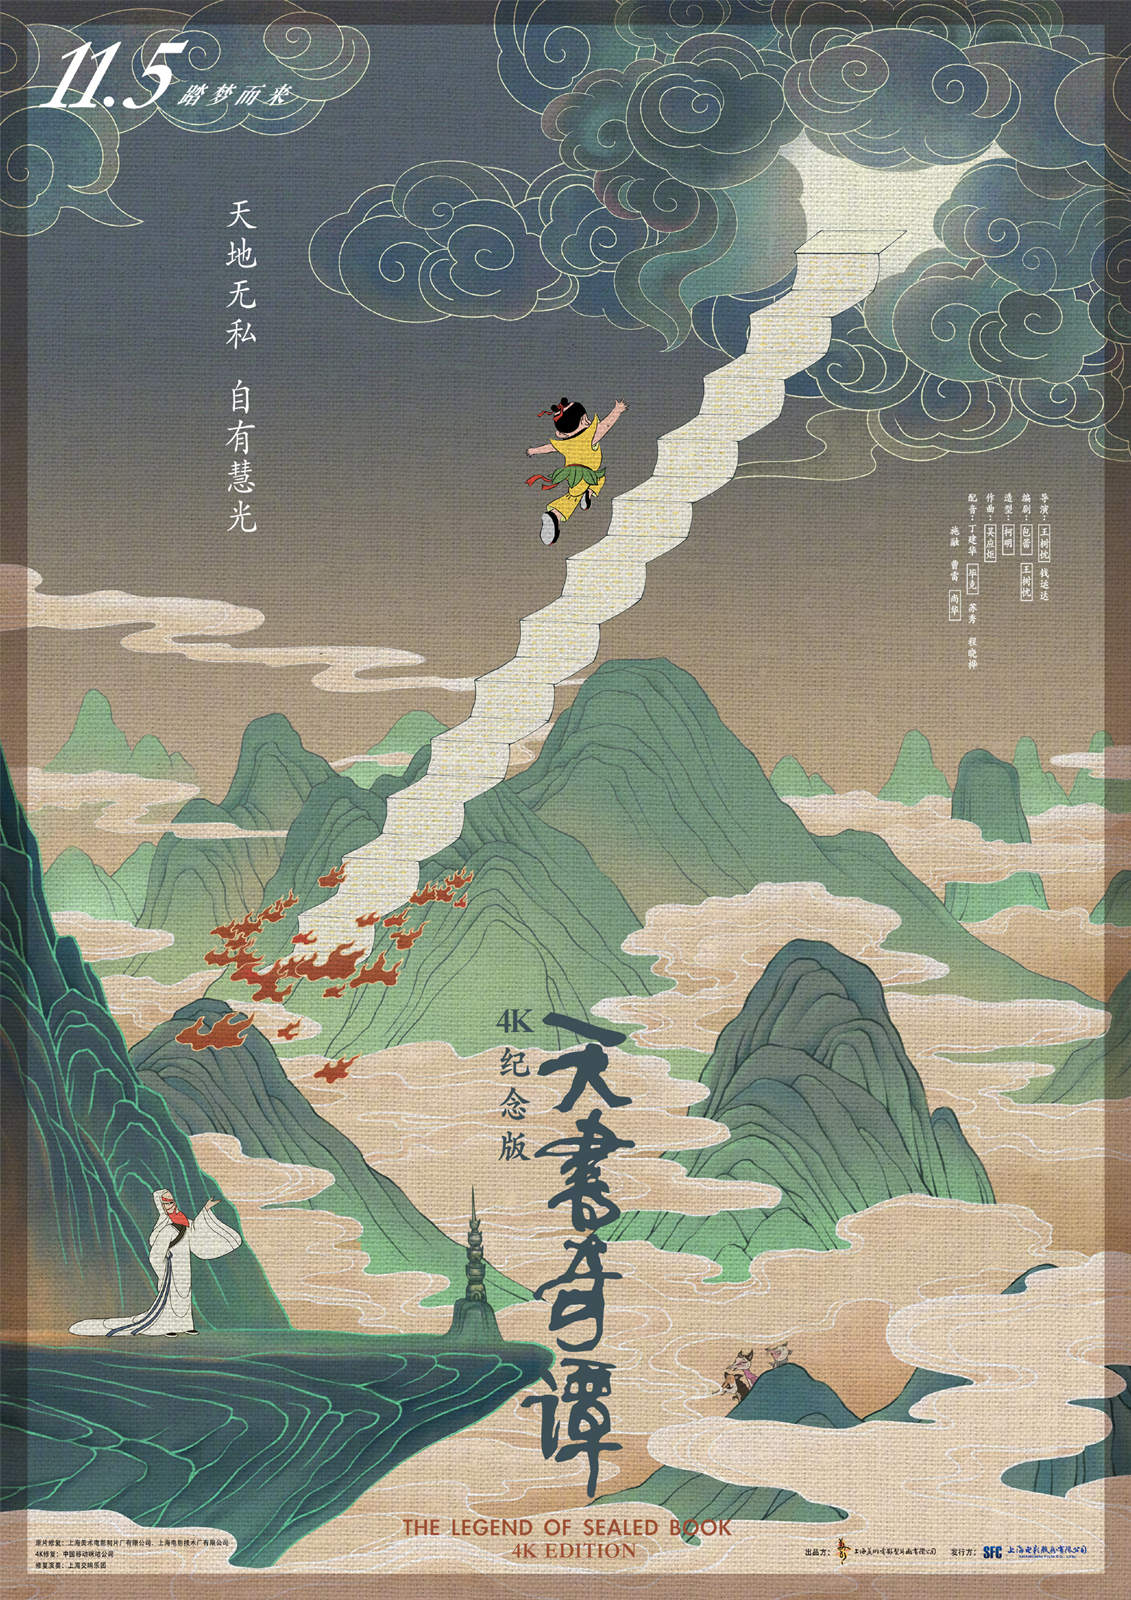 中国经典动画电影《天书奇谭》4K纪念版将于11月5日全国上映插图